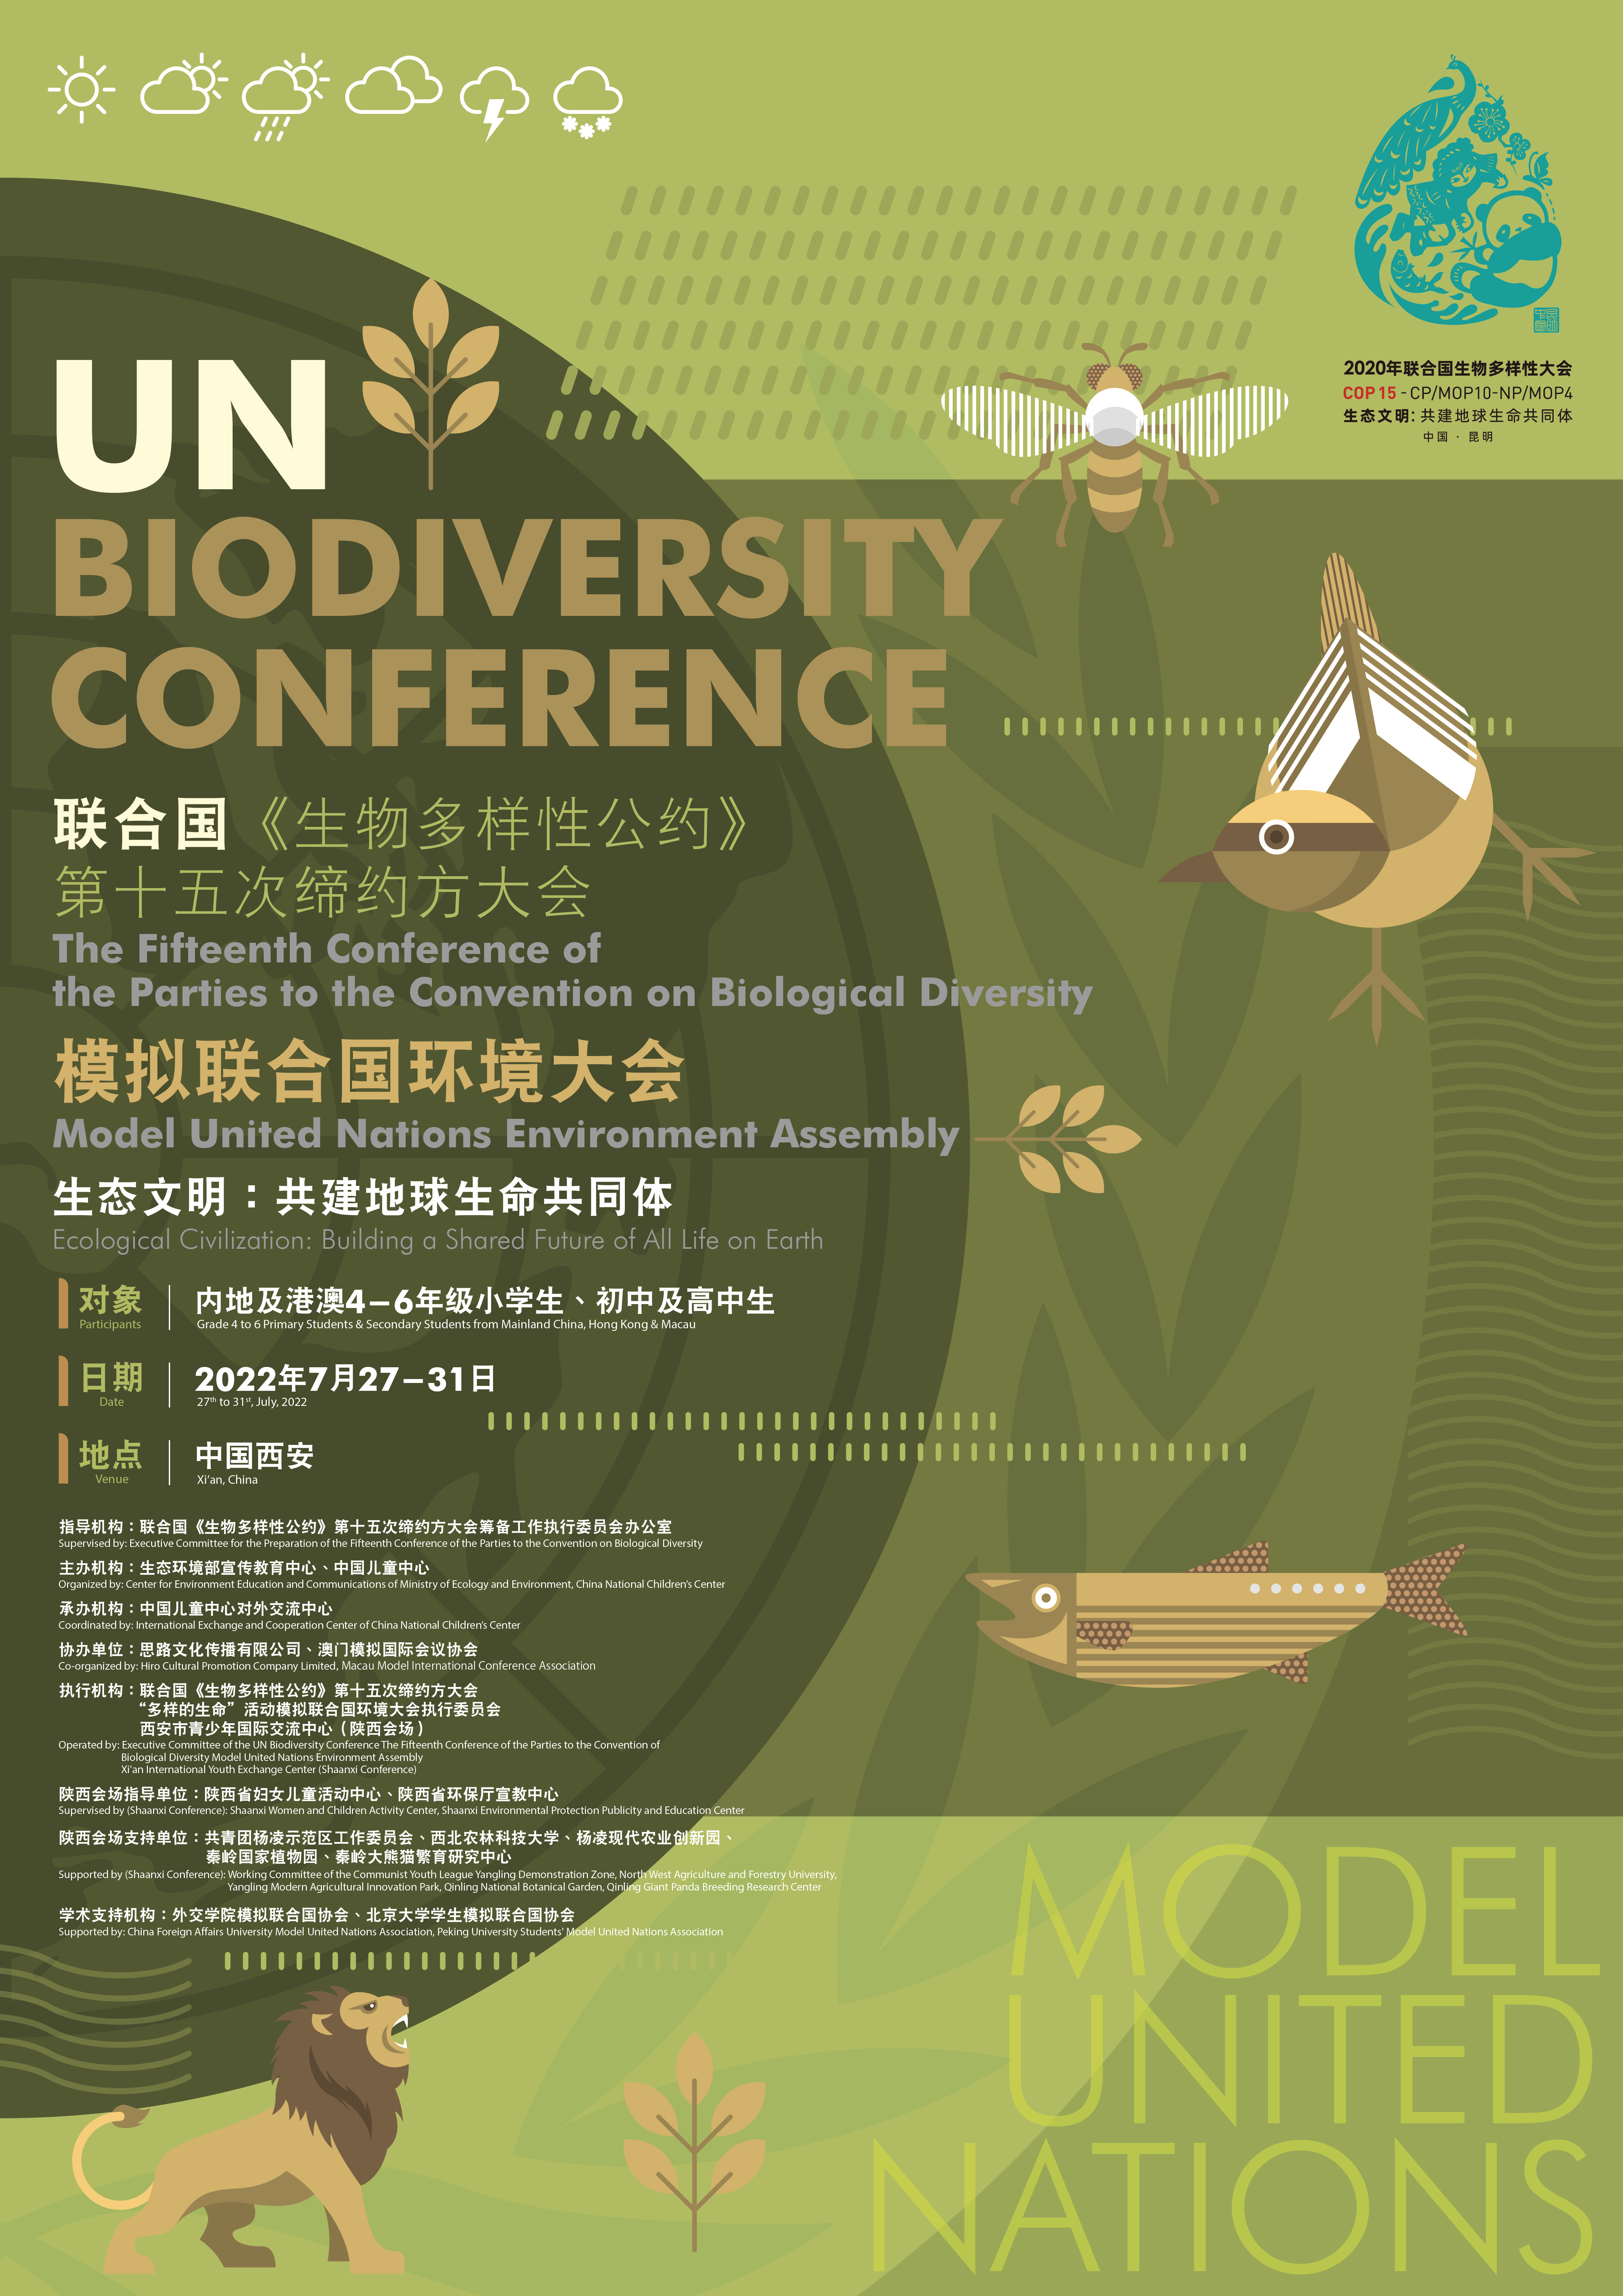 面向世界讲好陕西和秦岭故事联合国生物多样性大会cop15模拟联合国